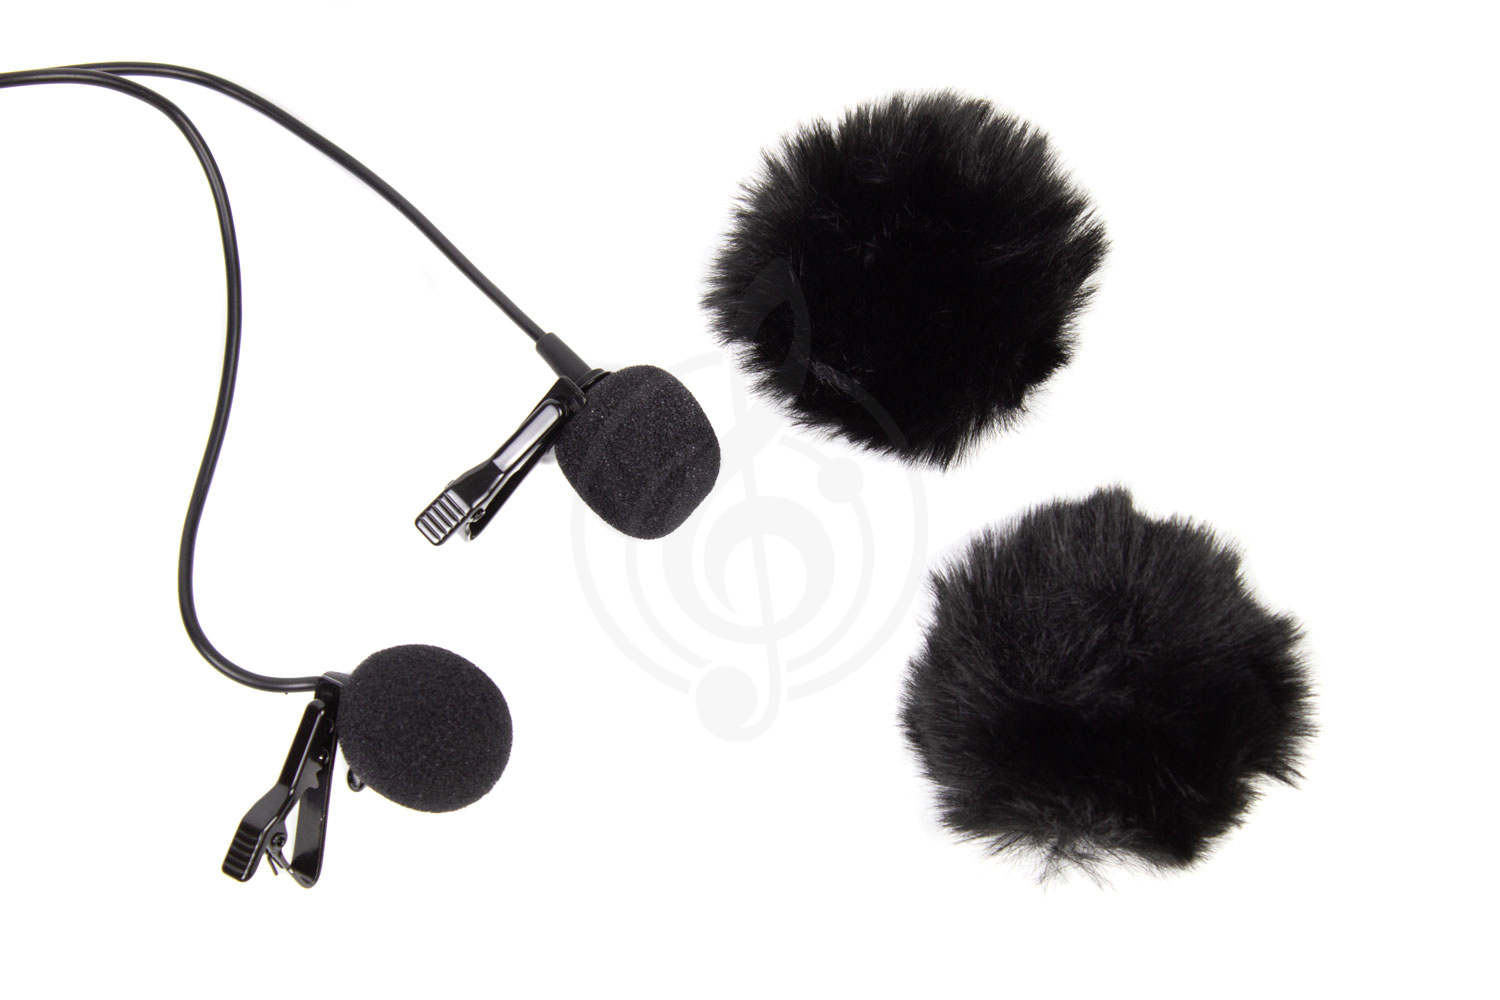 Микрофон для видеокамеры Микрофоны для видеокамер ACEMIC Acemic M12 - Микрофон для видеокамеры двойной M12 - фото 5